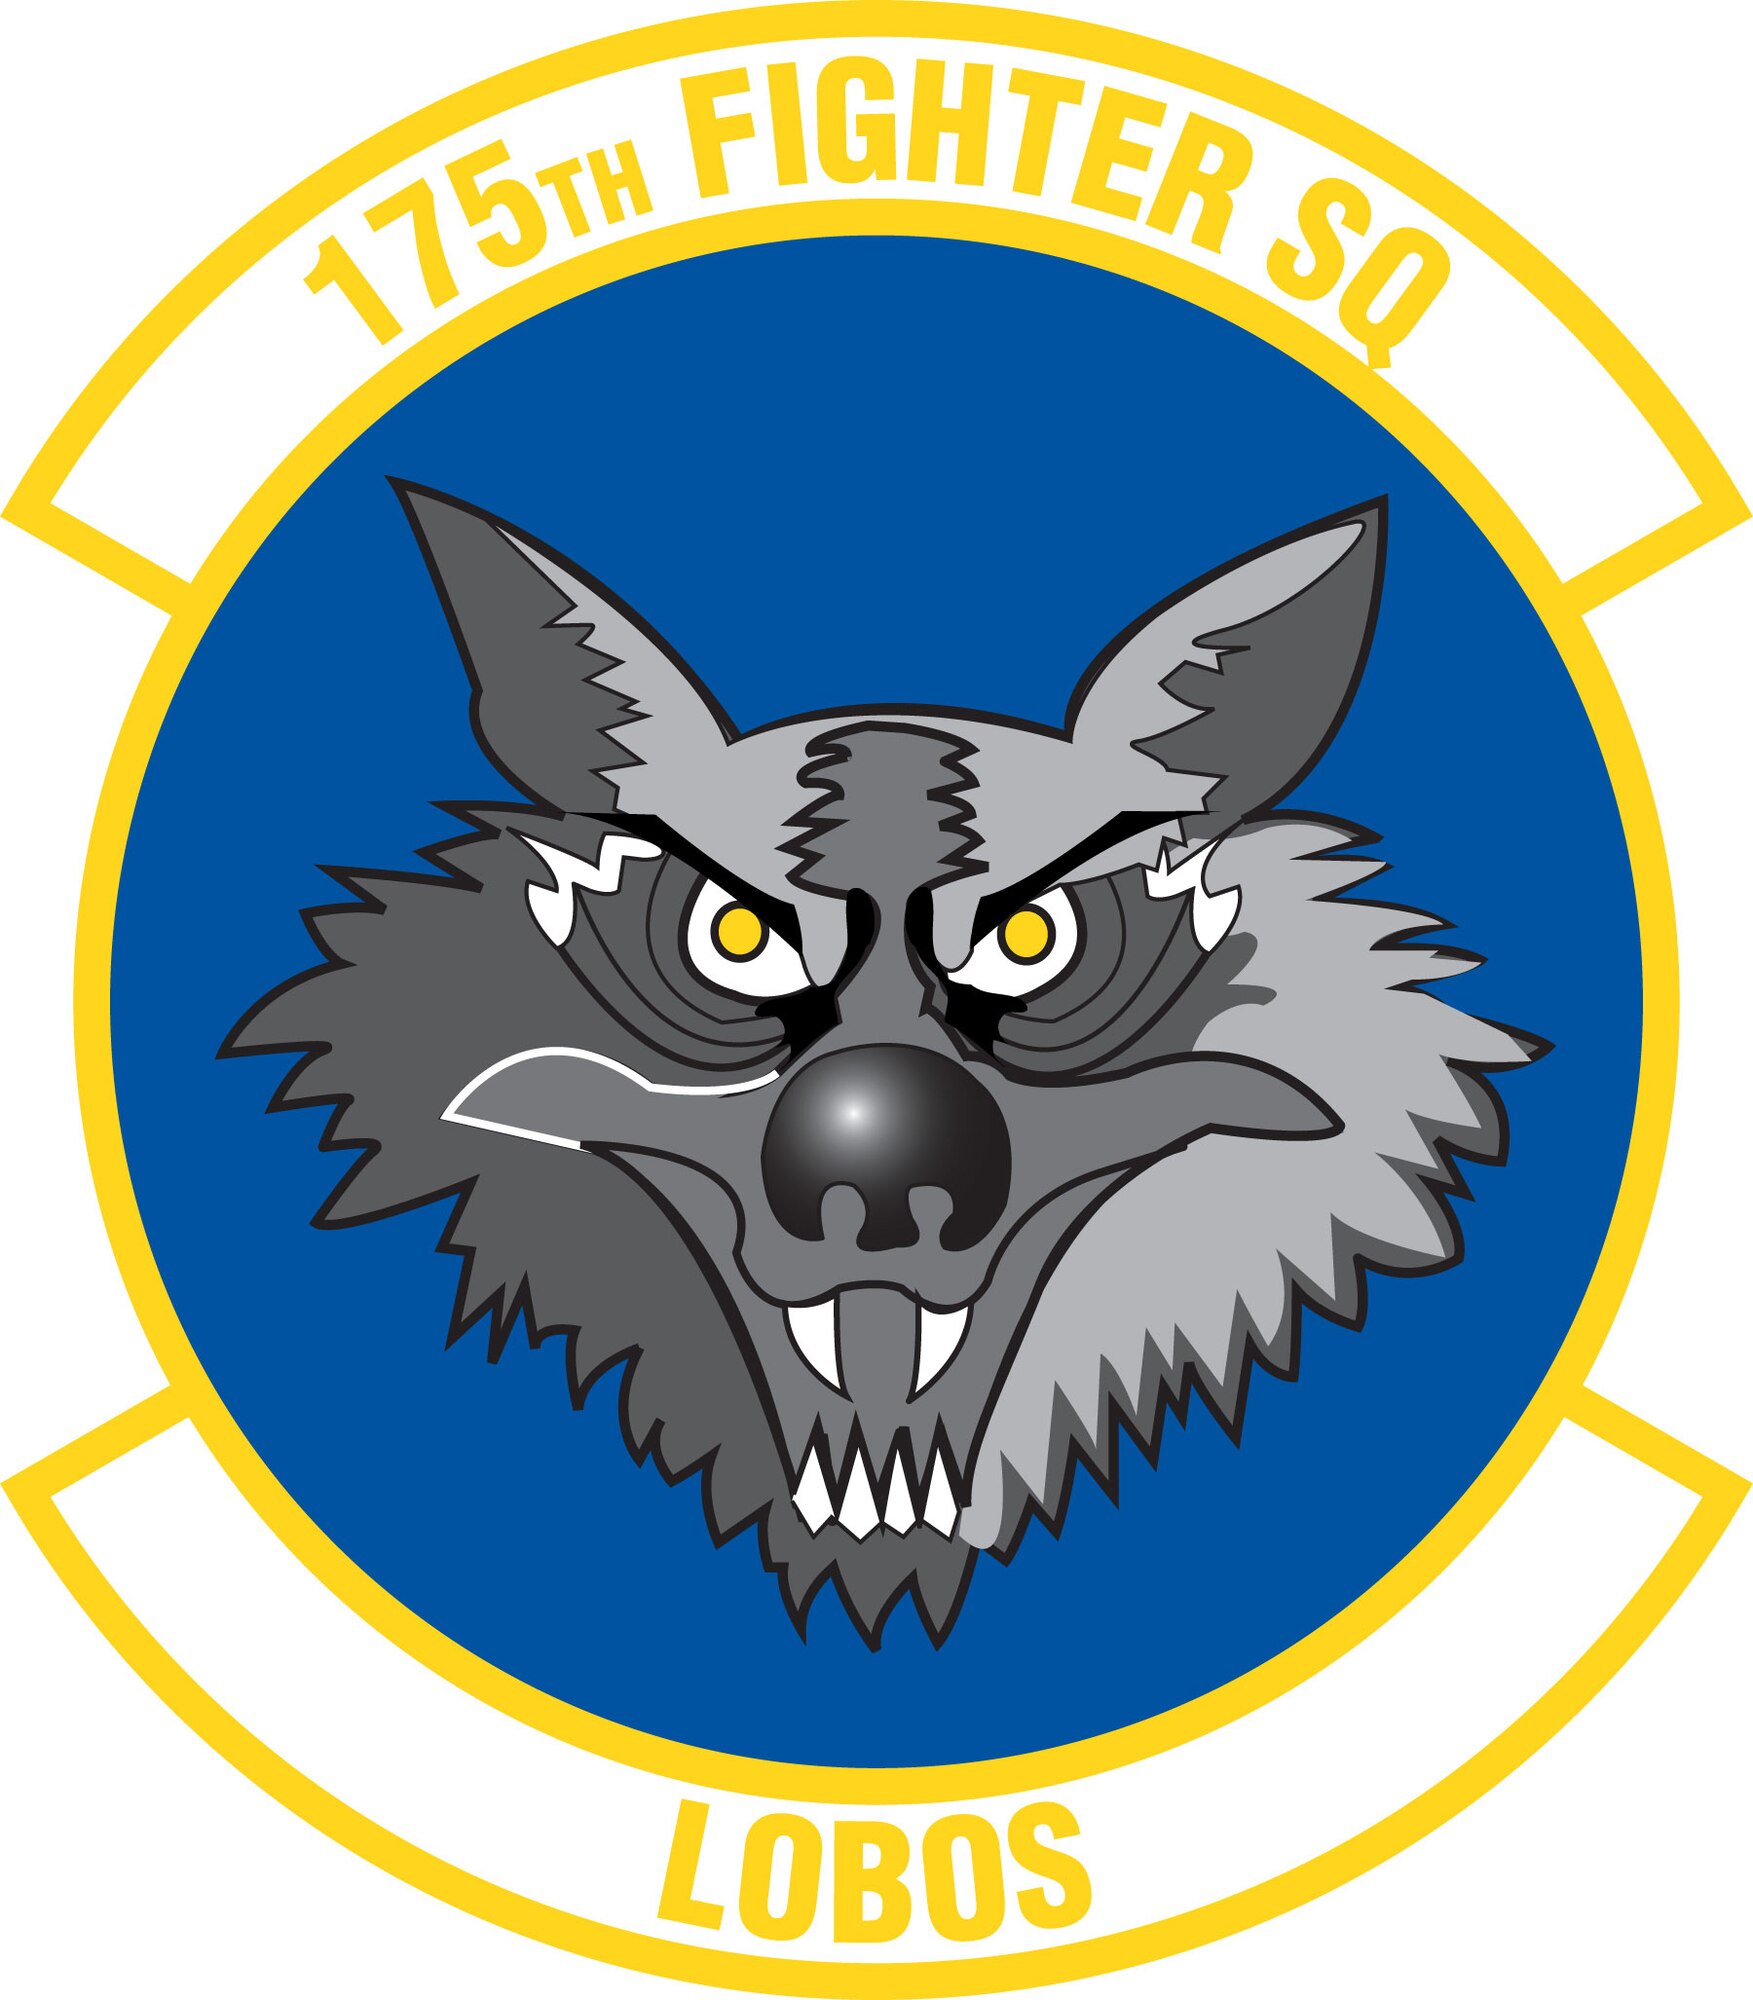 175th Fighter Squadron graphic